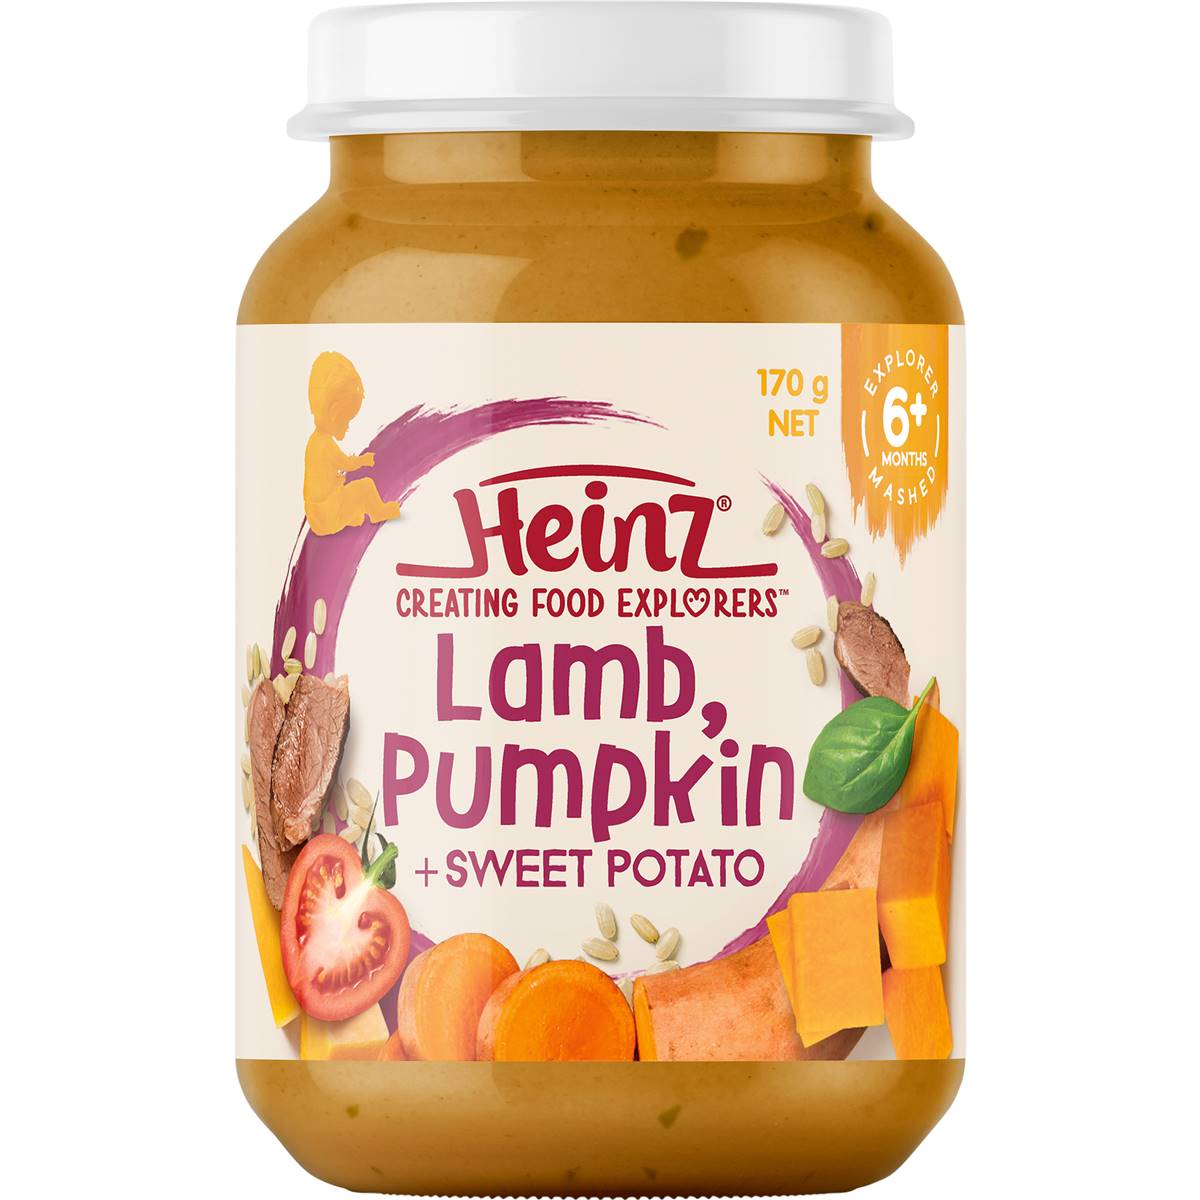 Heinz Lamb, Pumpkin & Sweet Potato 170g